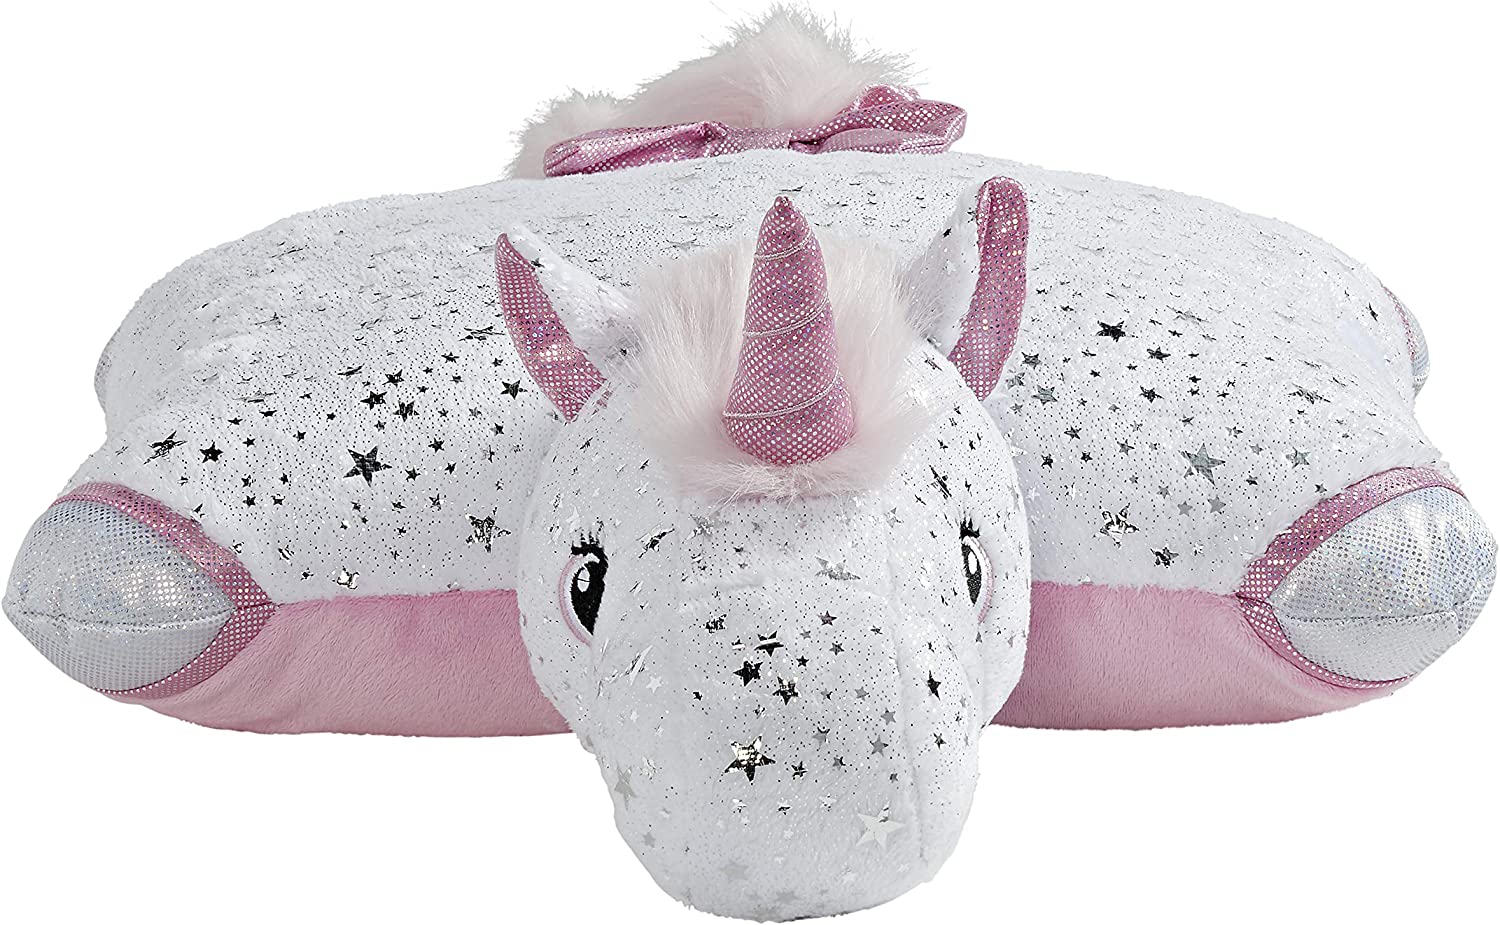 Pillow Pets Signature Glittery White Unicorn Stuffed Animal Plush Toy - image 2 of 5